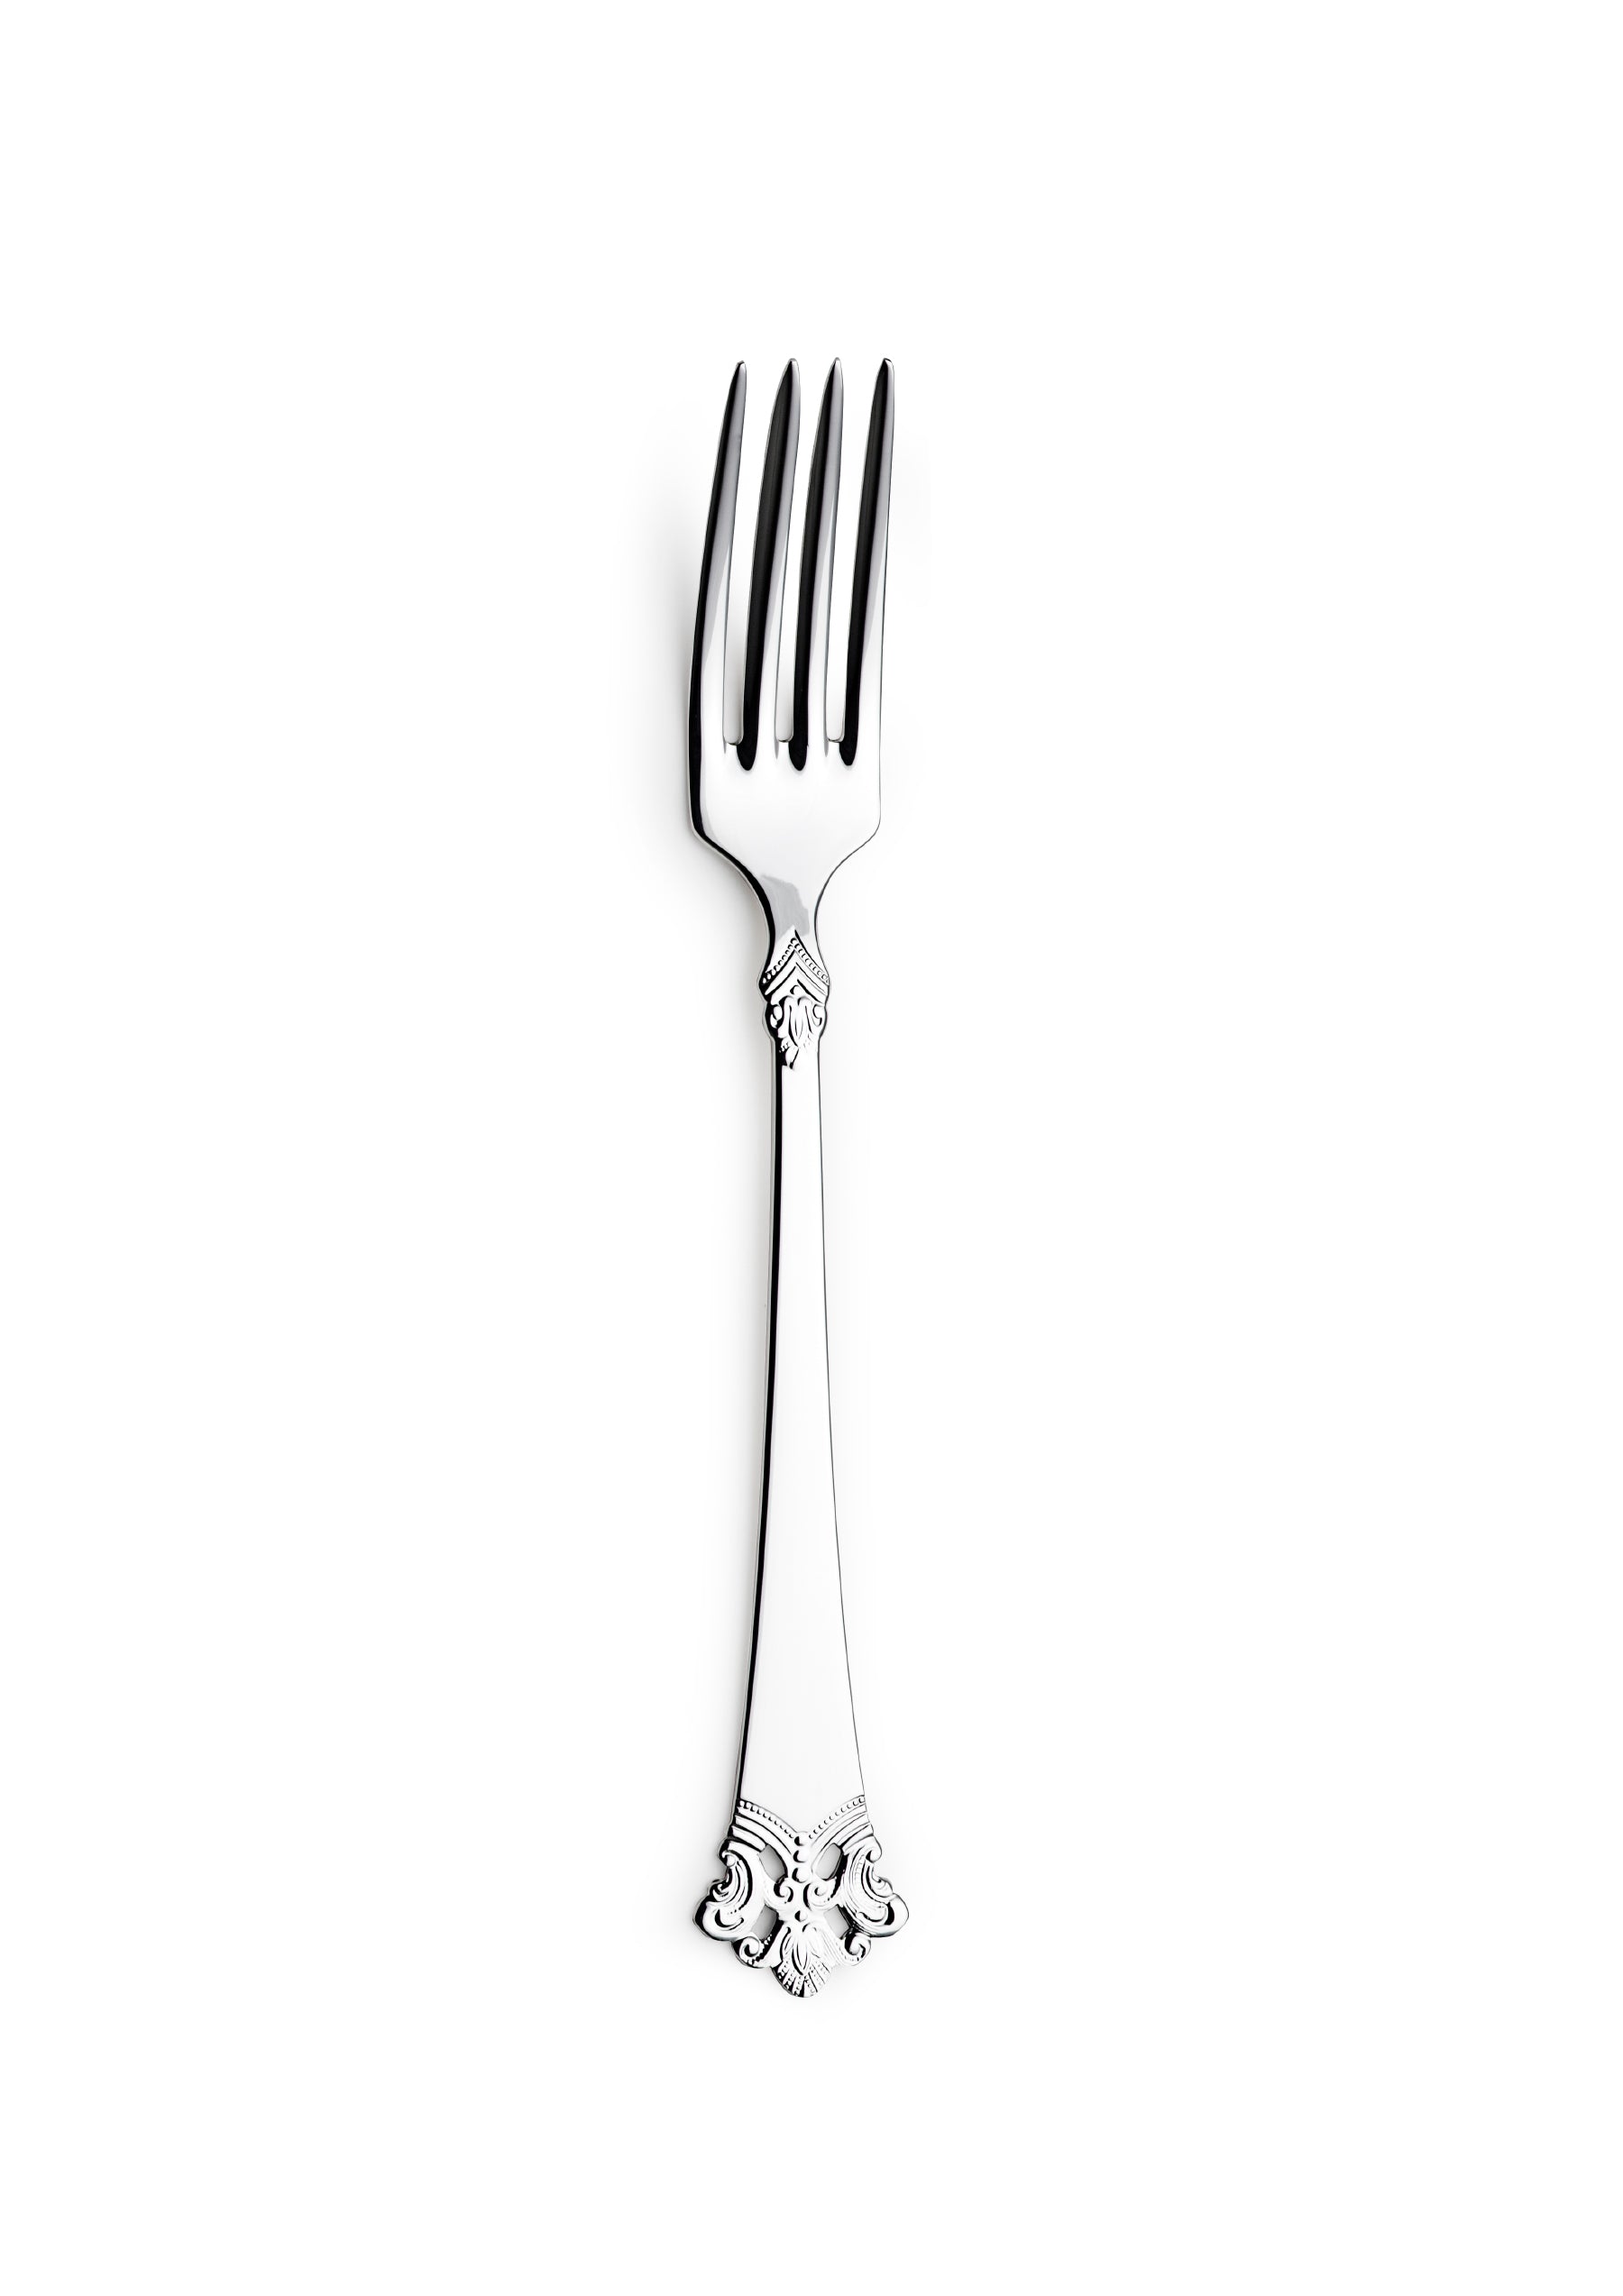 Anitra small dining fork